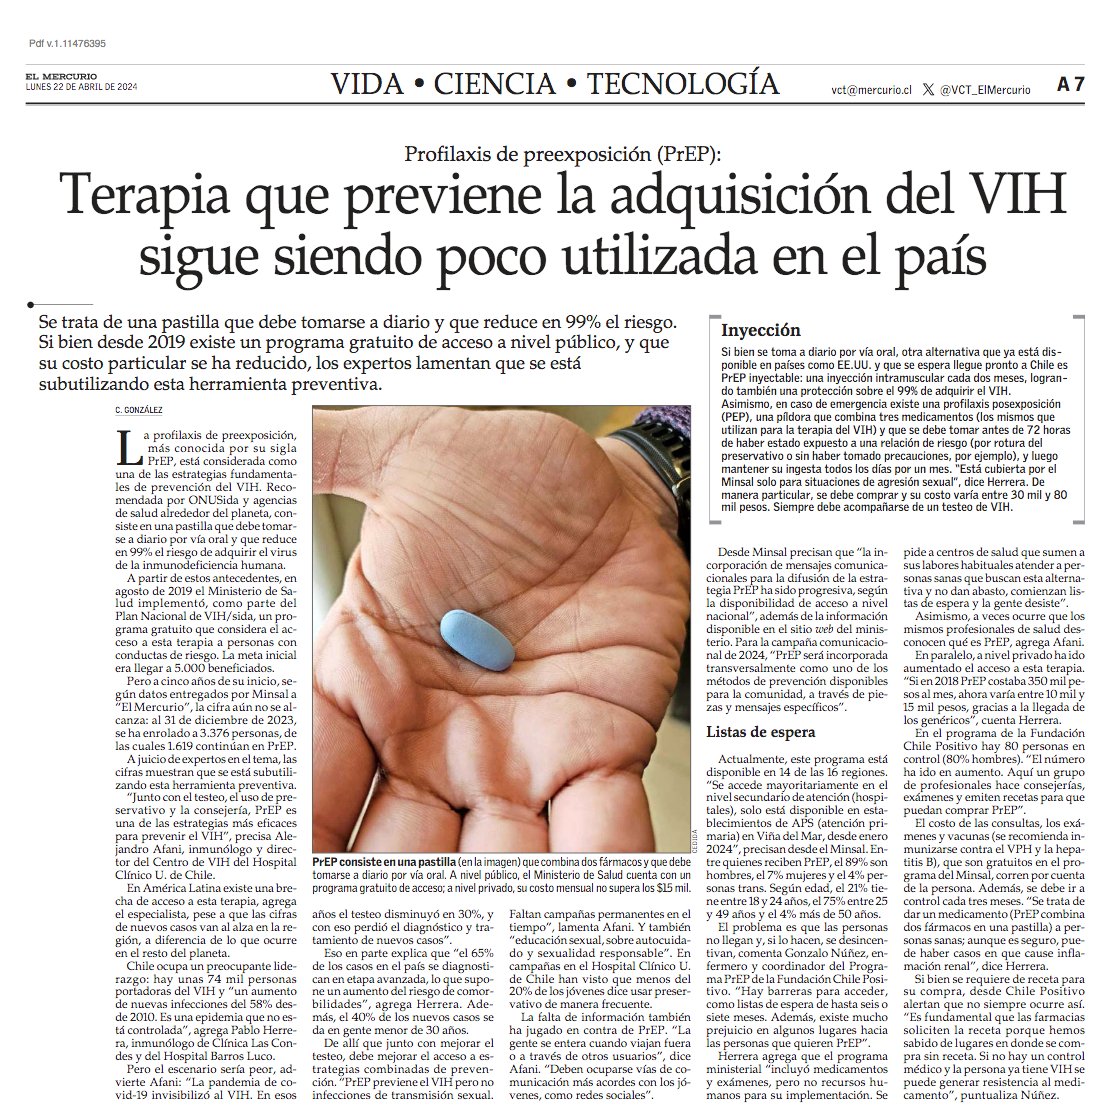 Terapia que previene la adquisición del VIH sigue siendo poco utilizada en el país. #VCTElMercurio shorturl.at/aoEIW